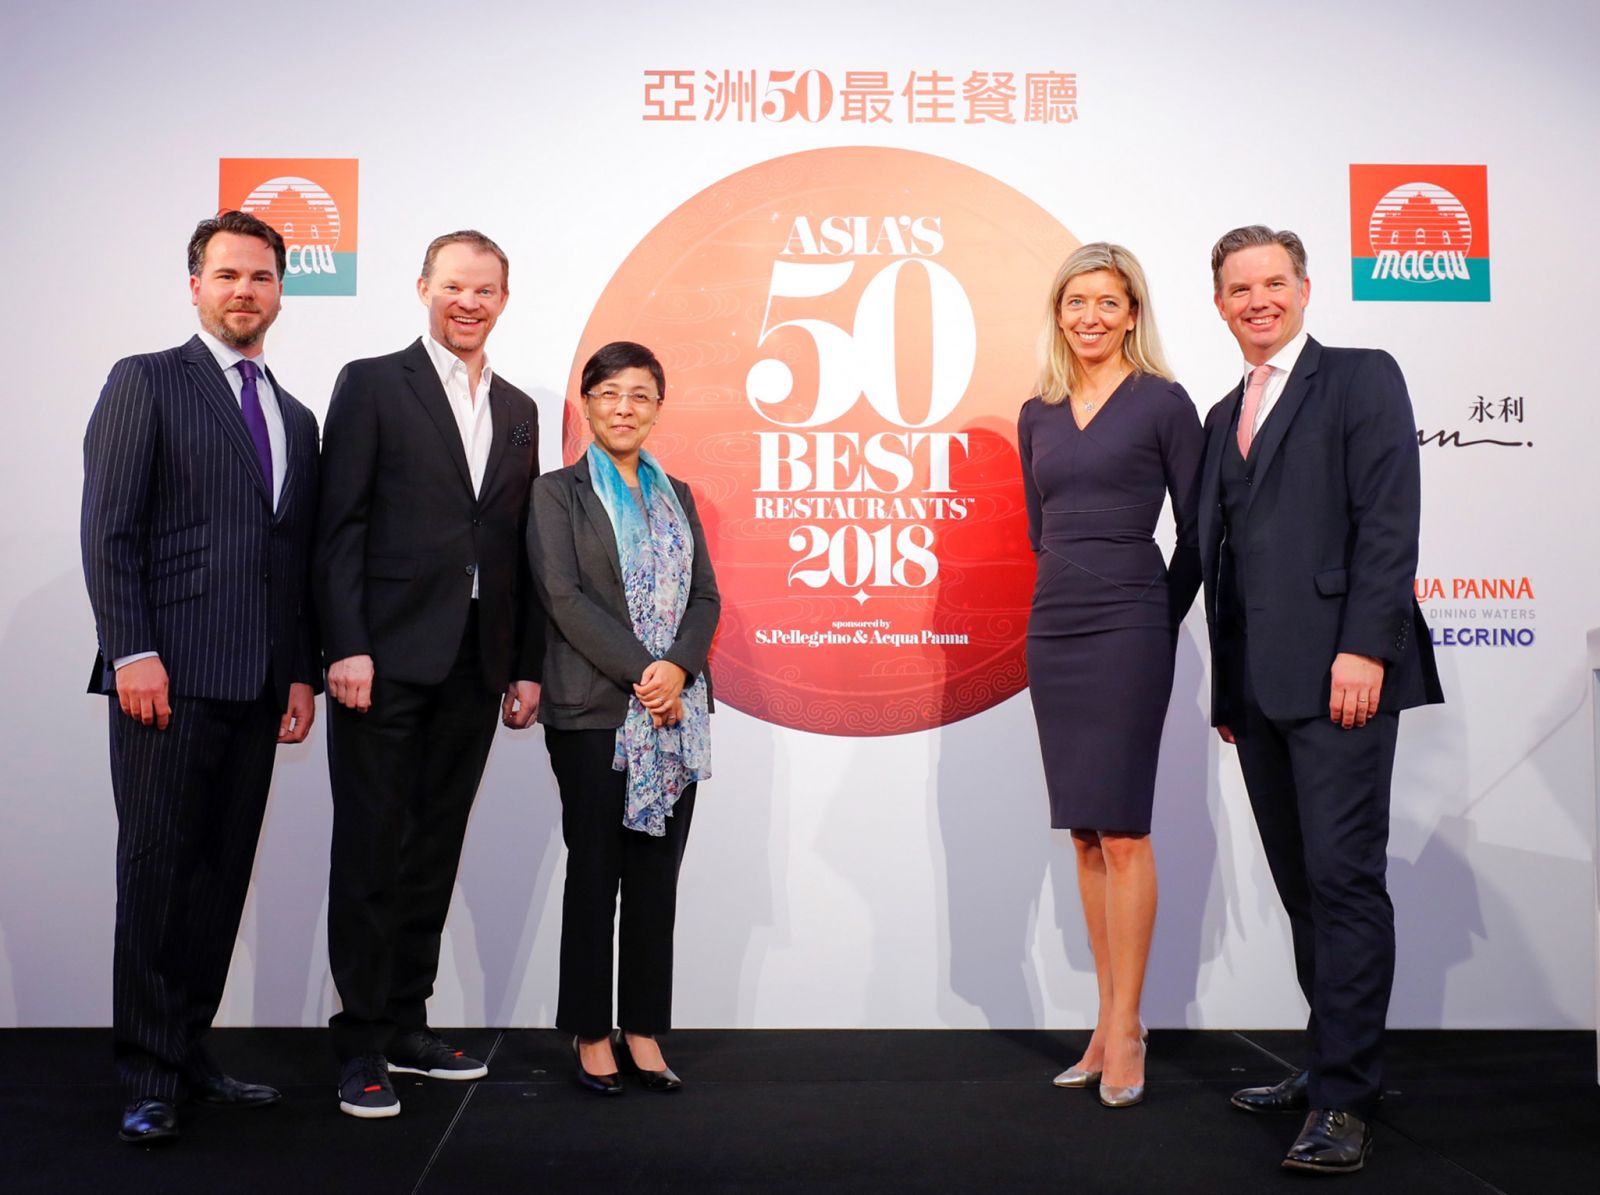 「亞洲50最佳餐廳」 頒獎禮後天本澳舉行